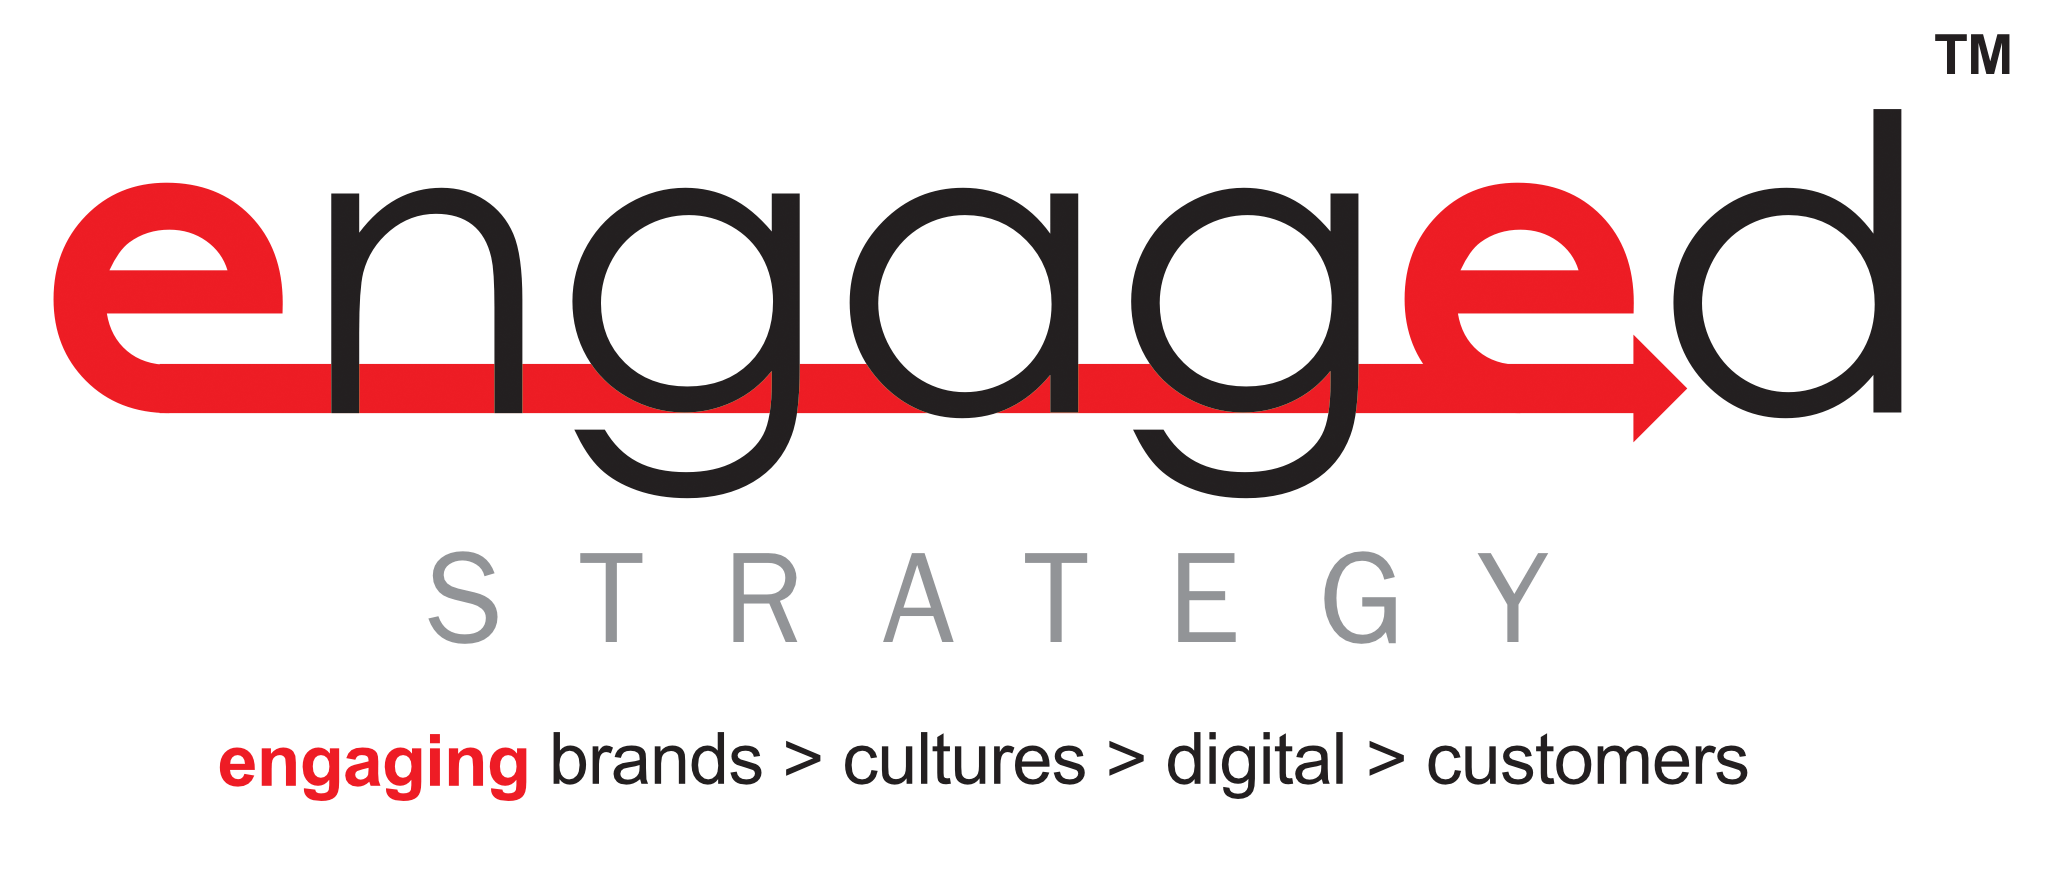 Engagement Logo - Engaged Strategy - Enhance Experiences | Engineer Engagement